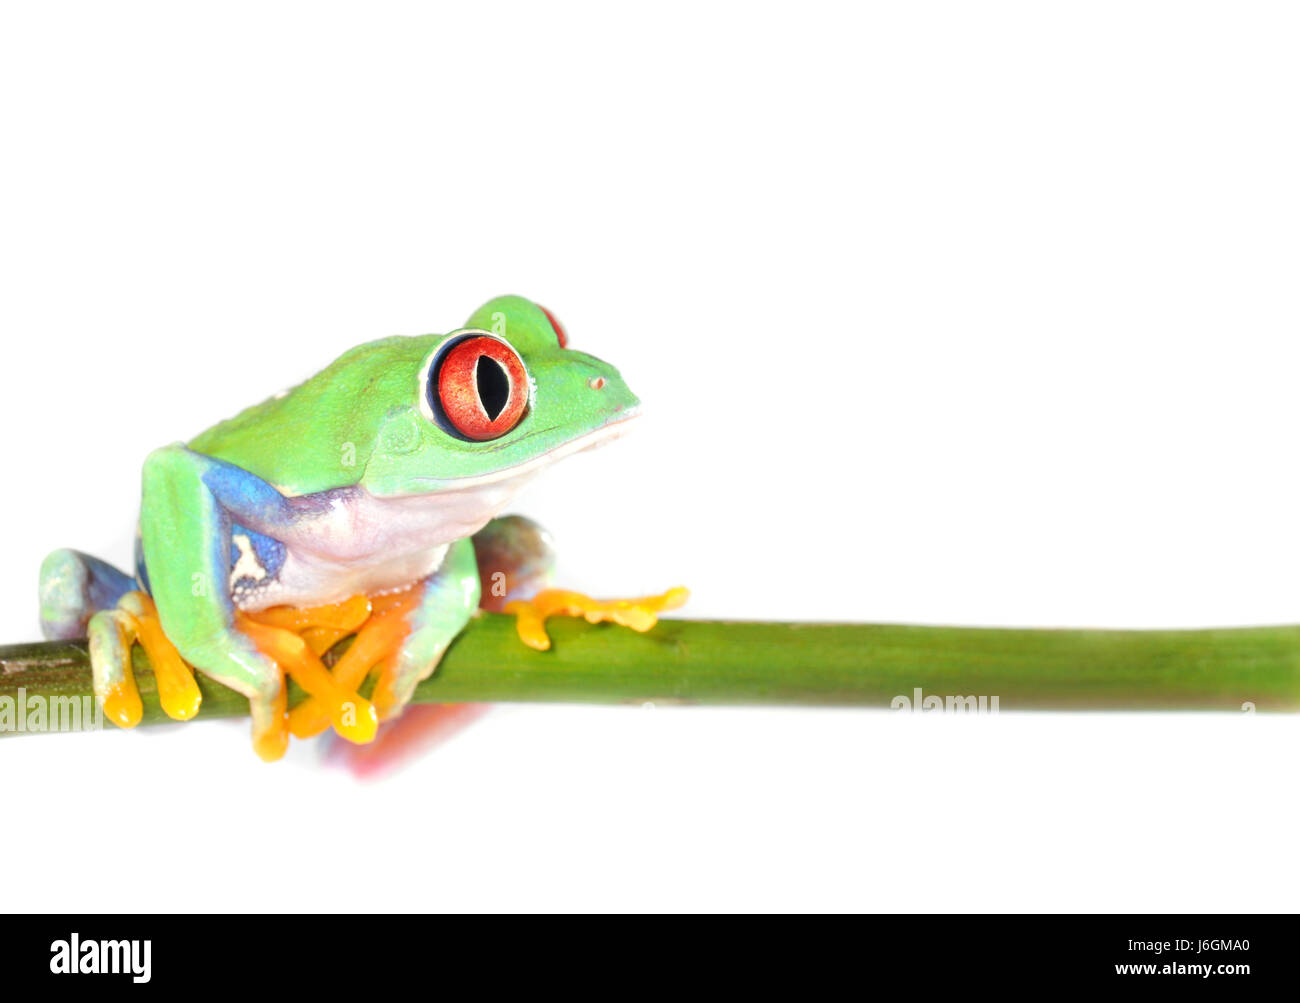 Beaux yeux beauteously belle grenouille organes amérique du sud couleurs couleurs couleurs Banque D'Images